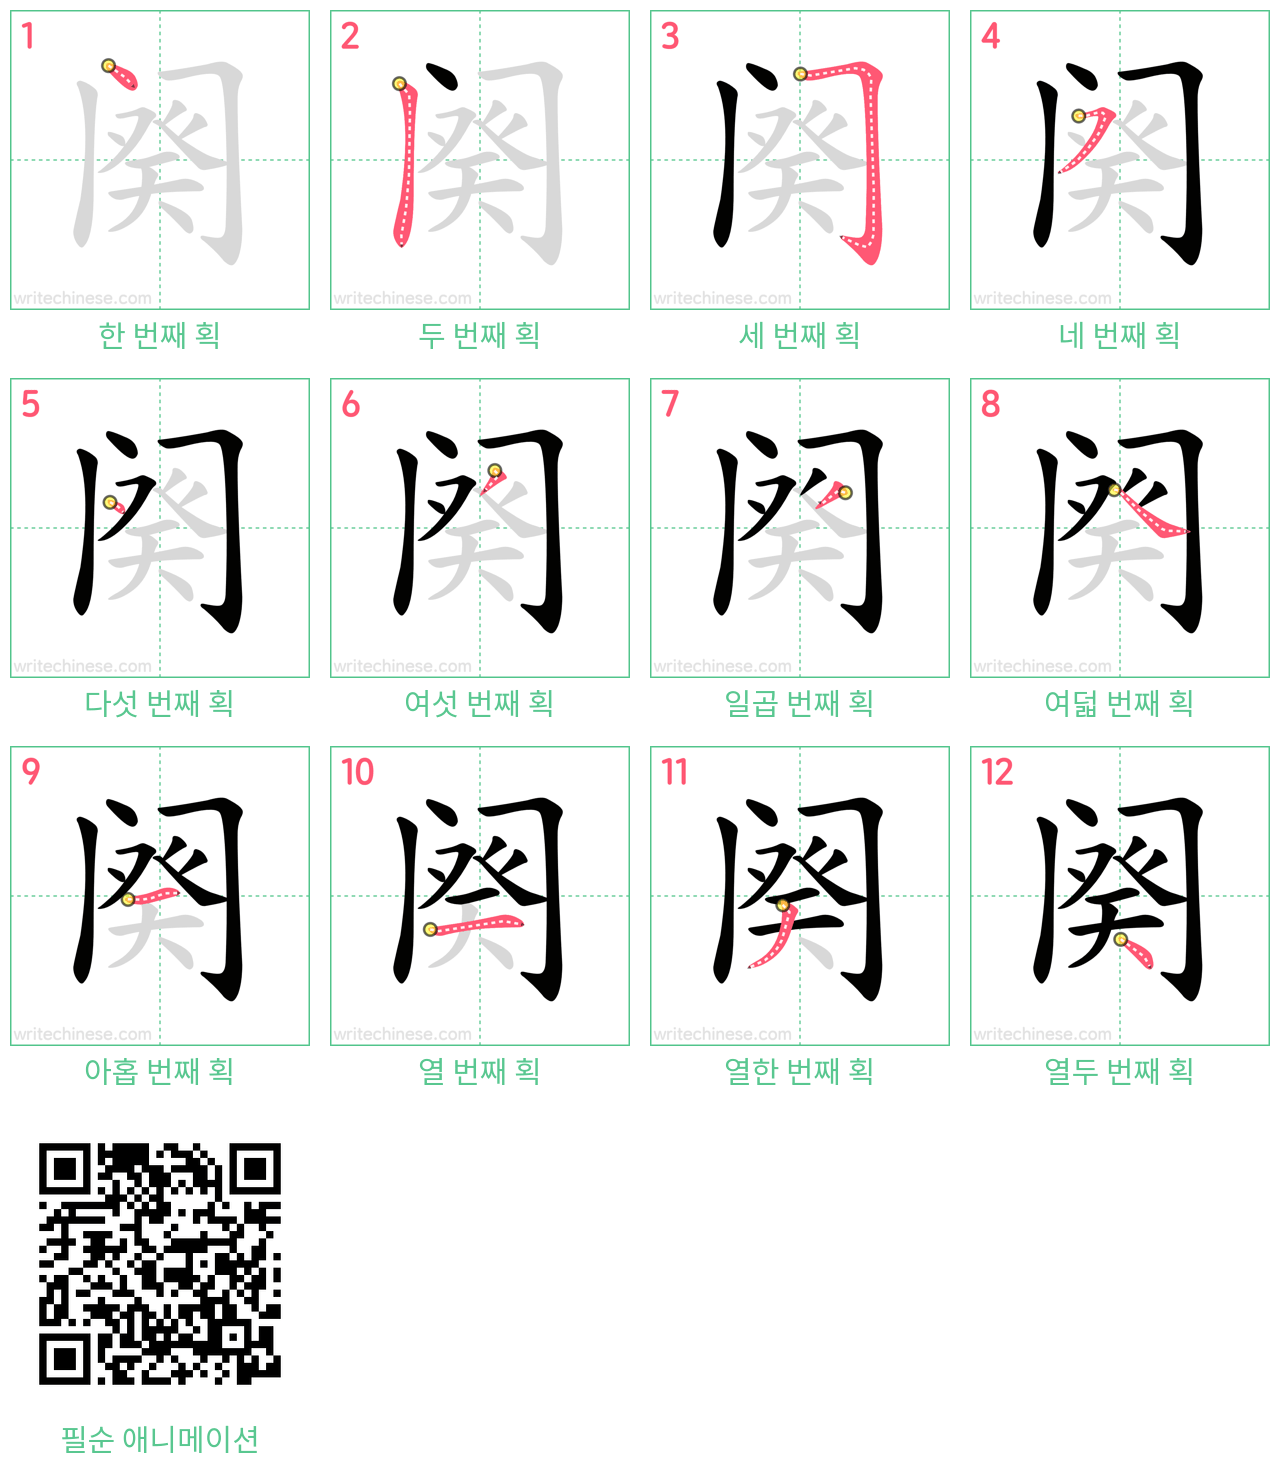 阕 step-by-step stroke order diagrams